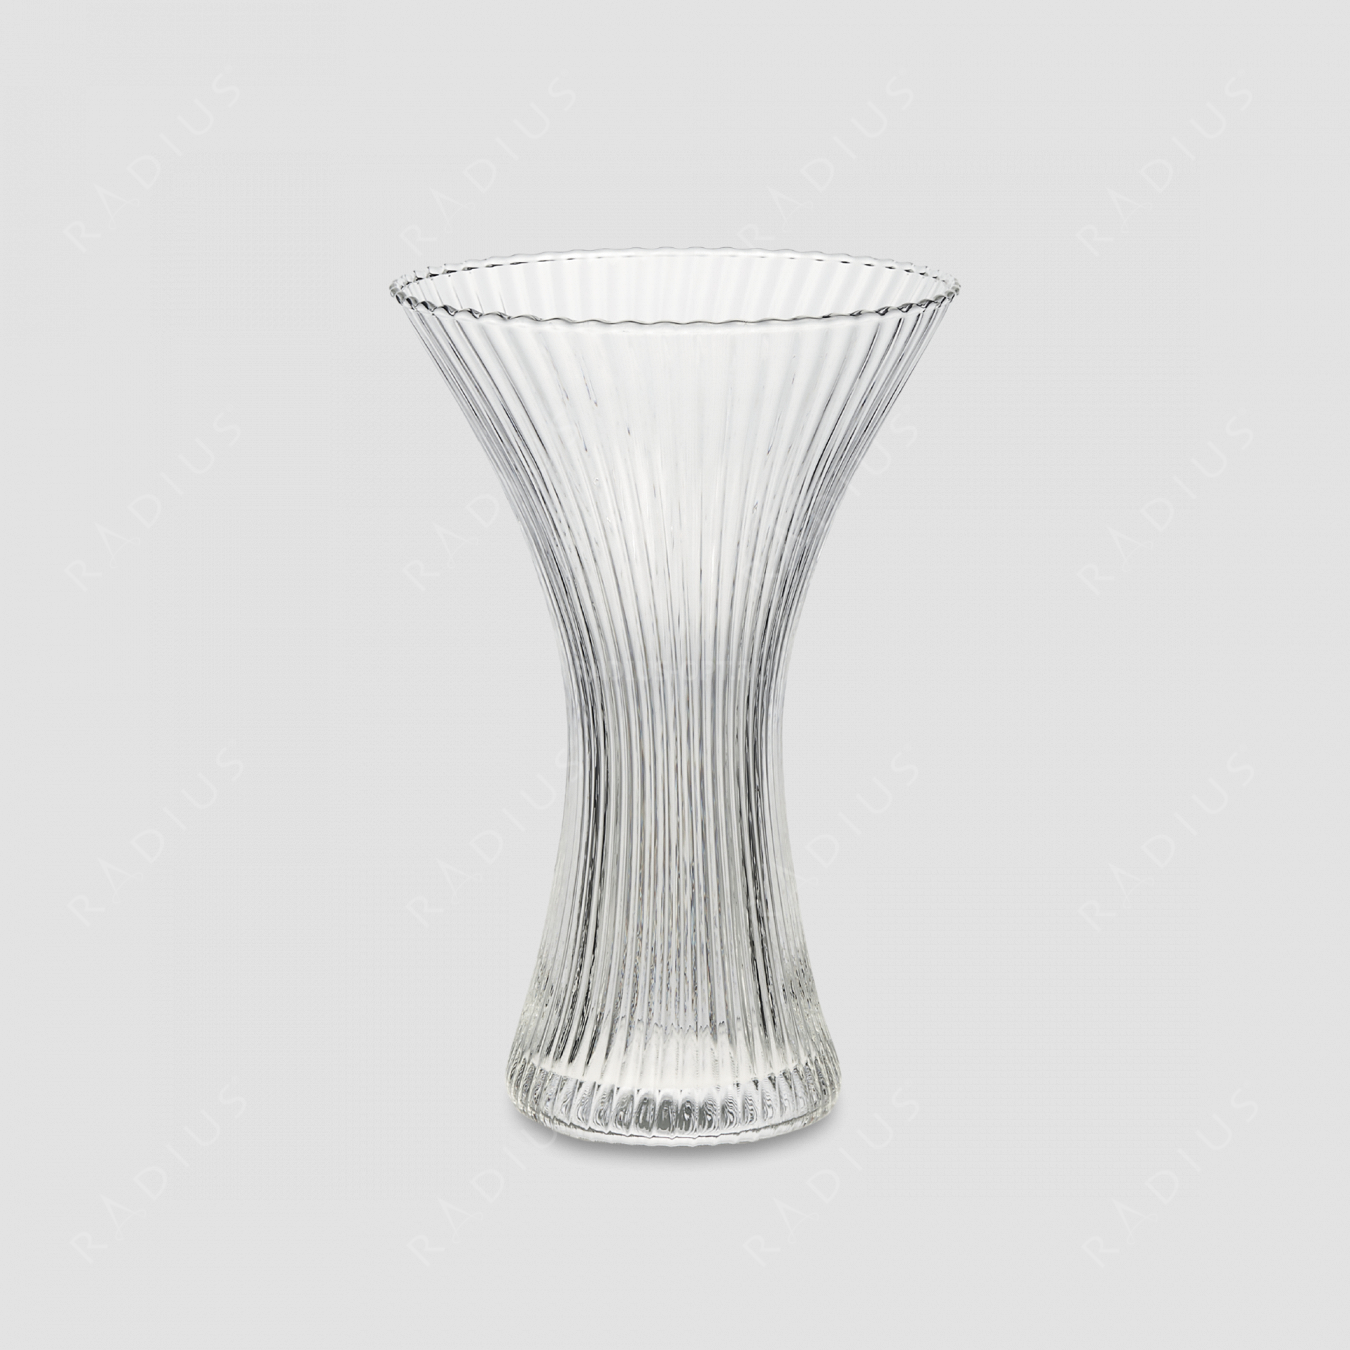 Стеклянная ваза для цветов, диаметр: 18 см, высота: 27,5 см, материал: стекло, цвет: прозрачный, серия Florenza, IVV (Italy), Италия